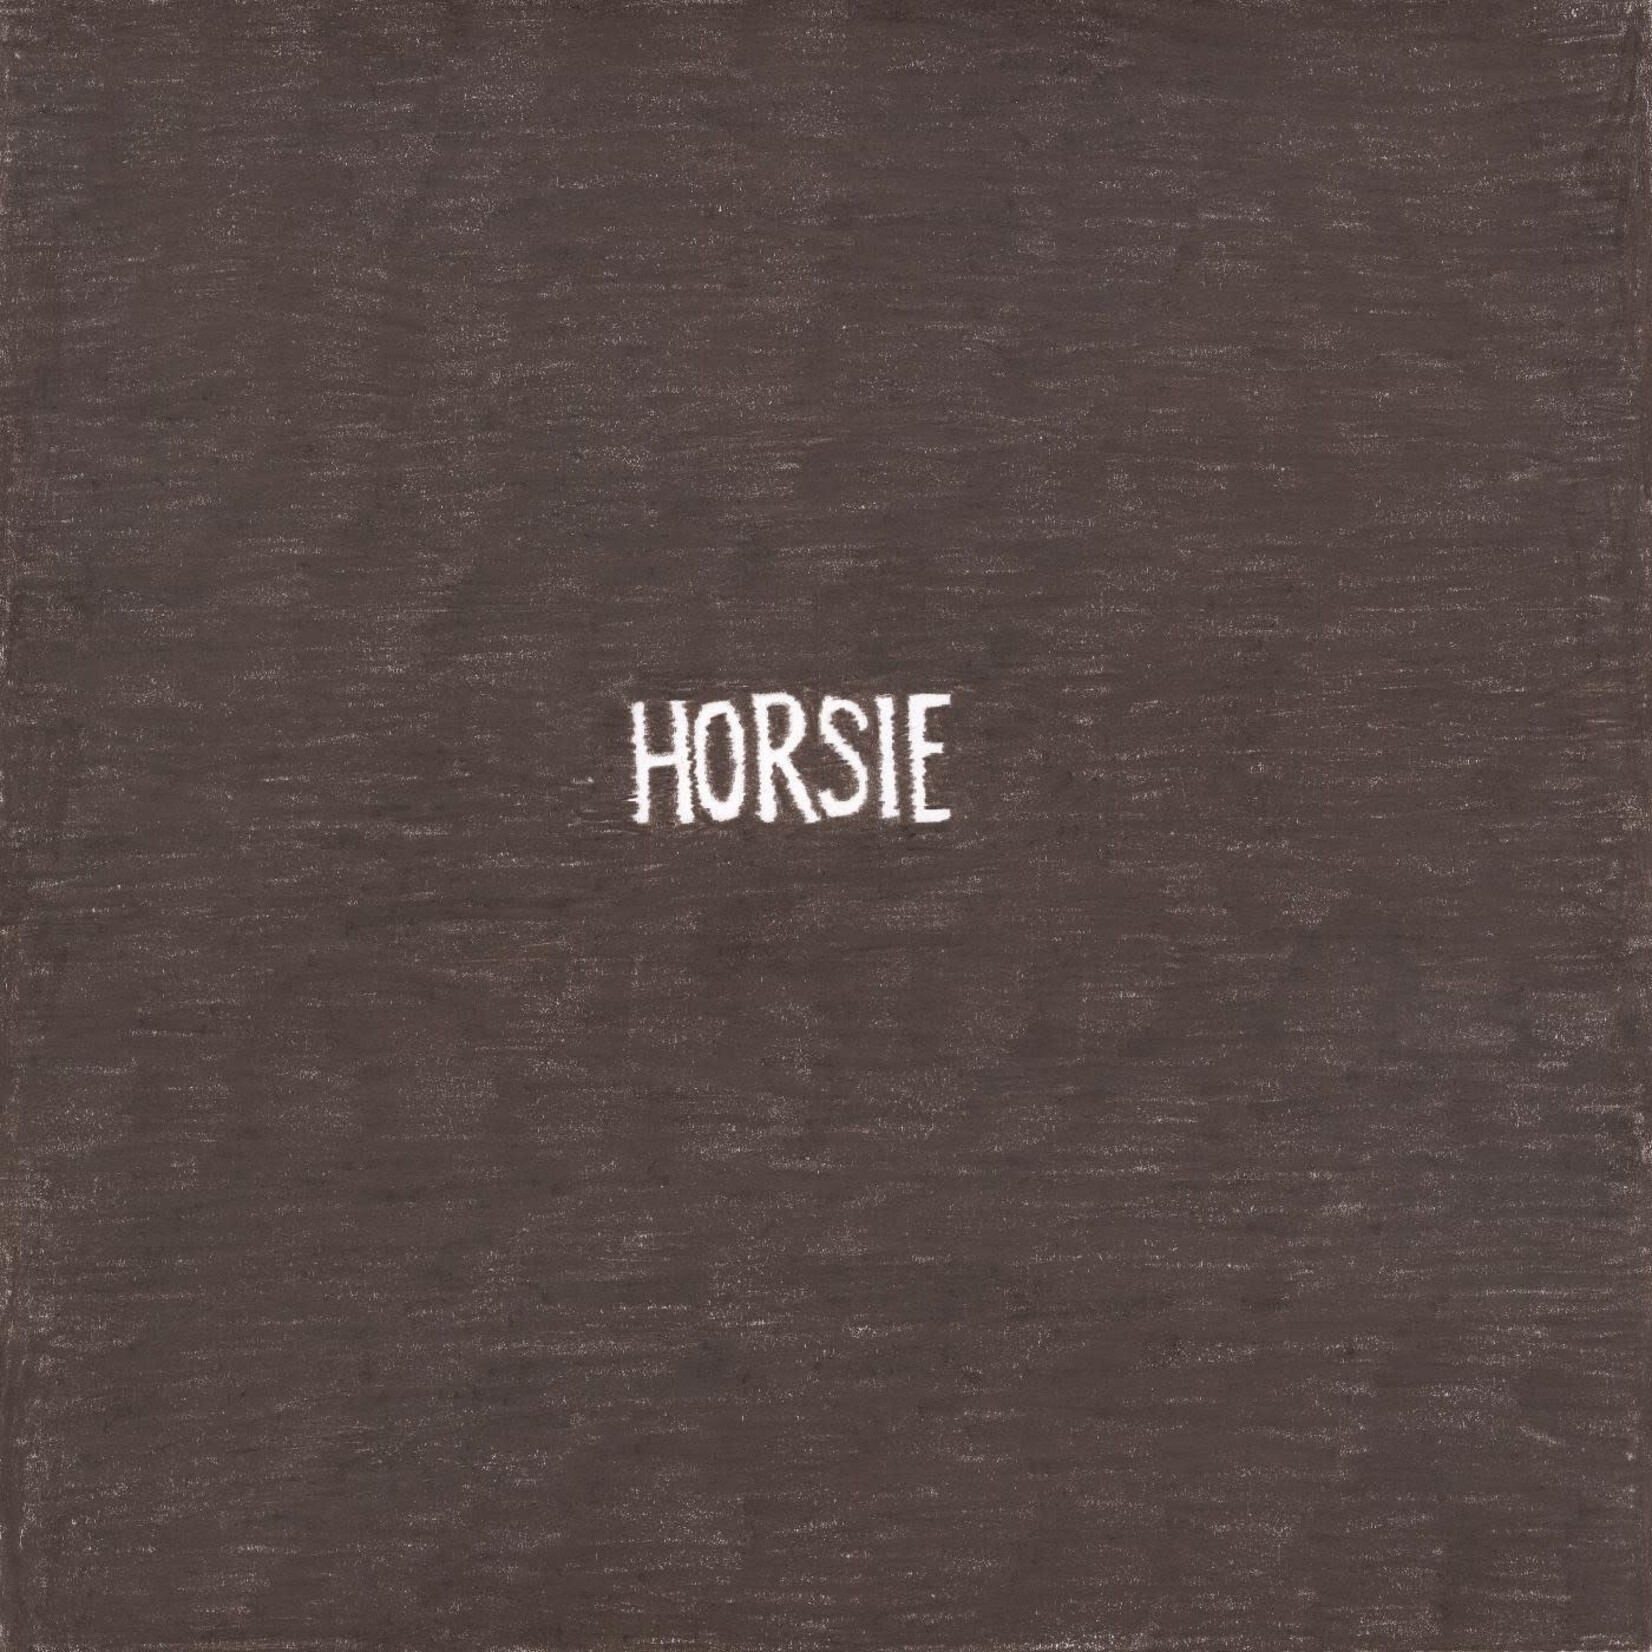 PRE-ORDER Homeshake - Horsie (LP)